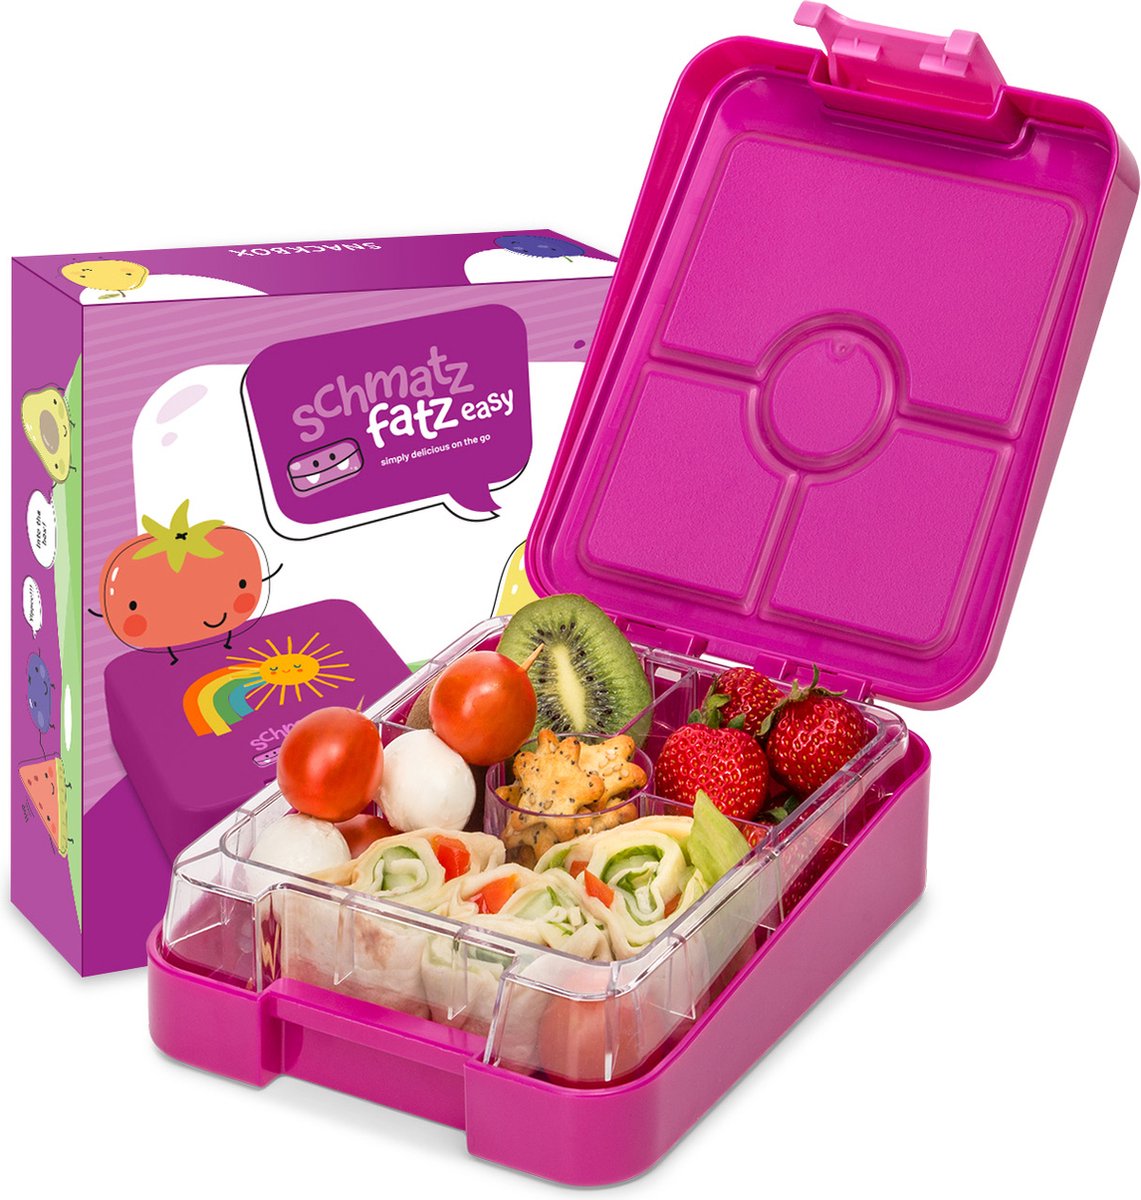 schmatzfatz Easy broodtrommel voor kinderen met vakken, kleurrijke kinderlunchbox, onderverdeeld en lekvrij, BPA-vrije lunchbox voor kleuterschool/kinderdagverblijf, bento box kinderen